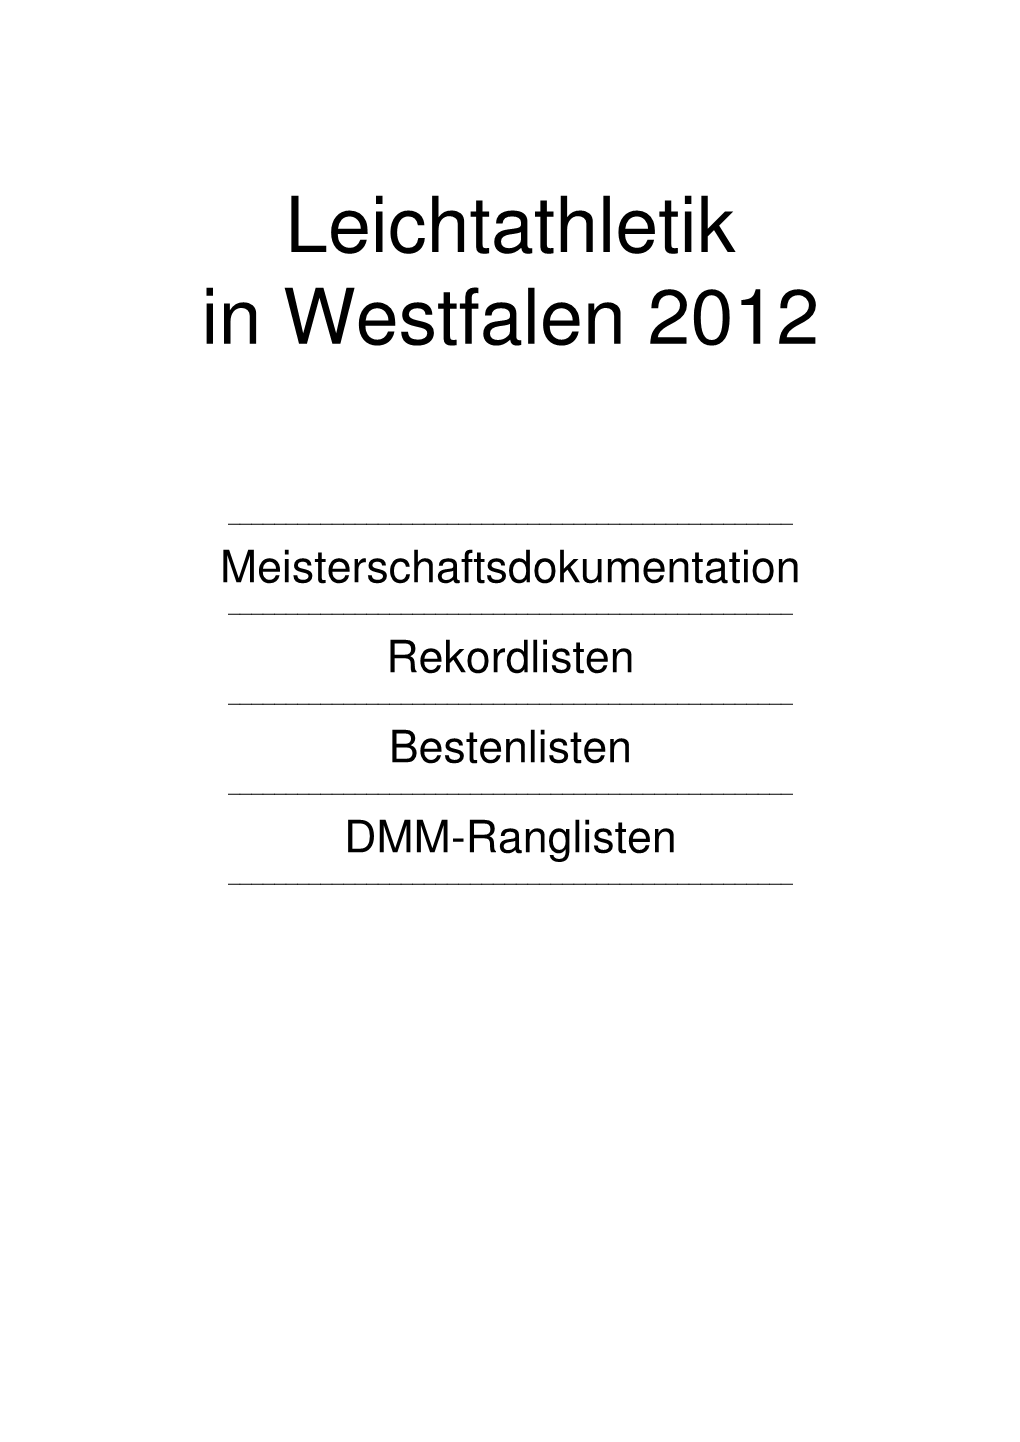 FLVW Bestenliste 2012